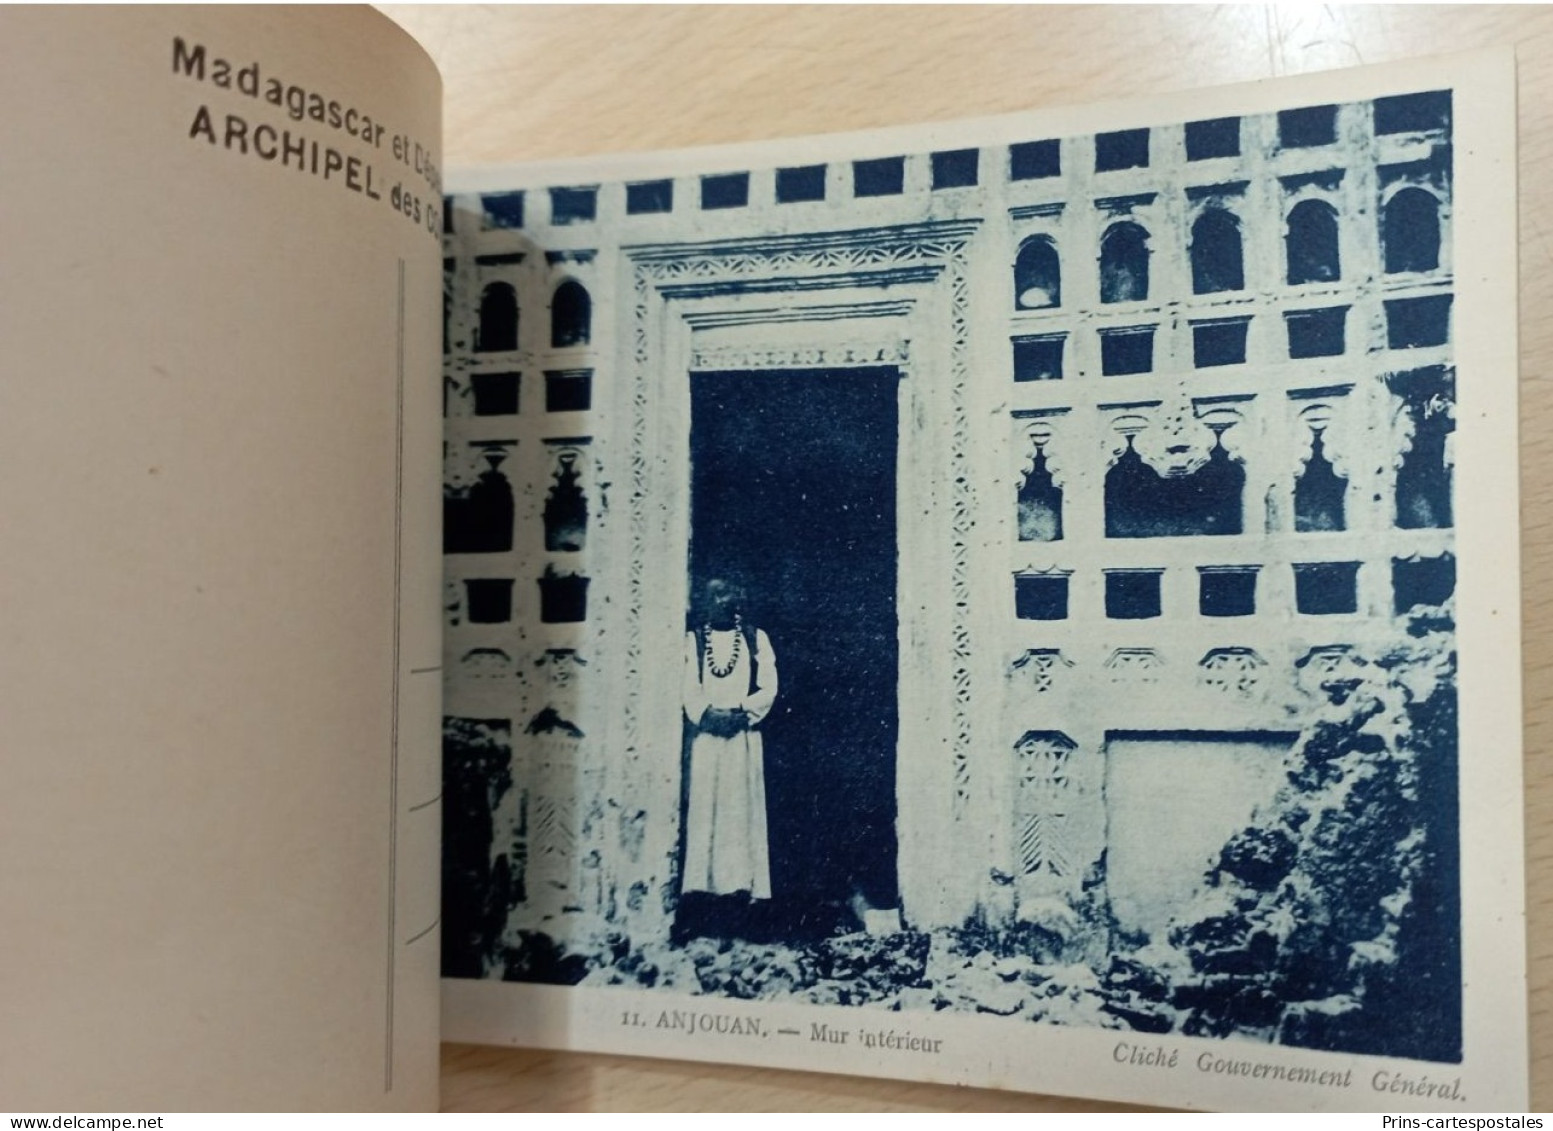 Carnet 20 cartes Archipel des Comores Madagascar et Dépendance - Albums des colonies édités par la maison d'Art Colonial